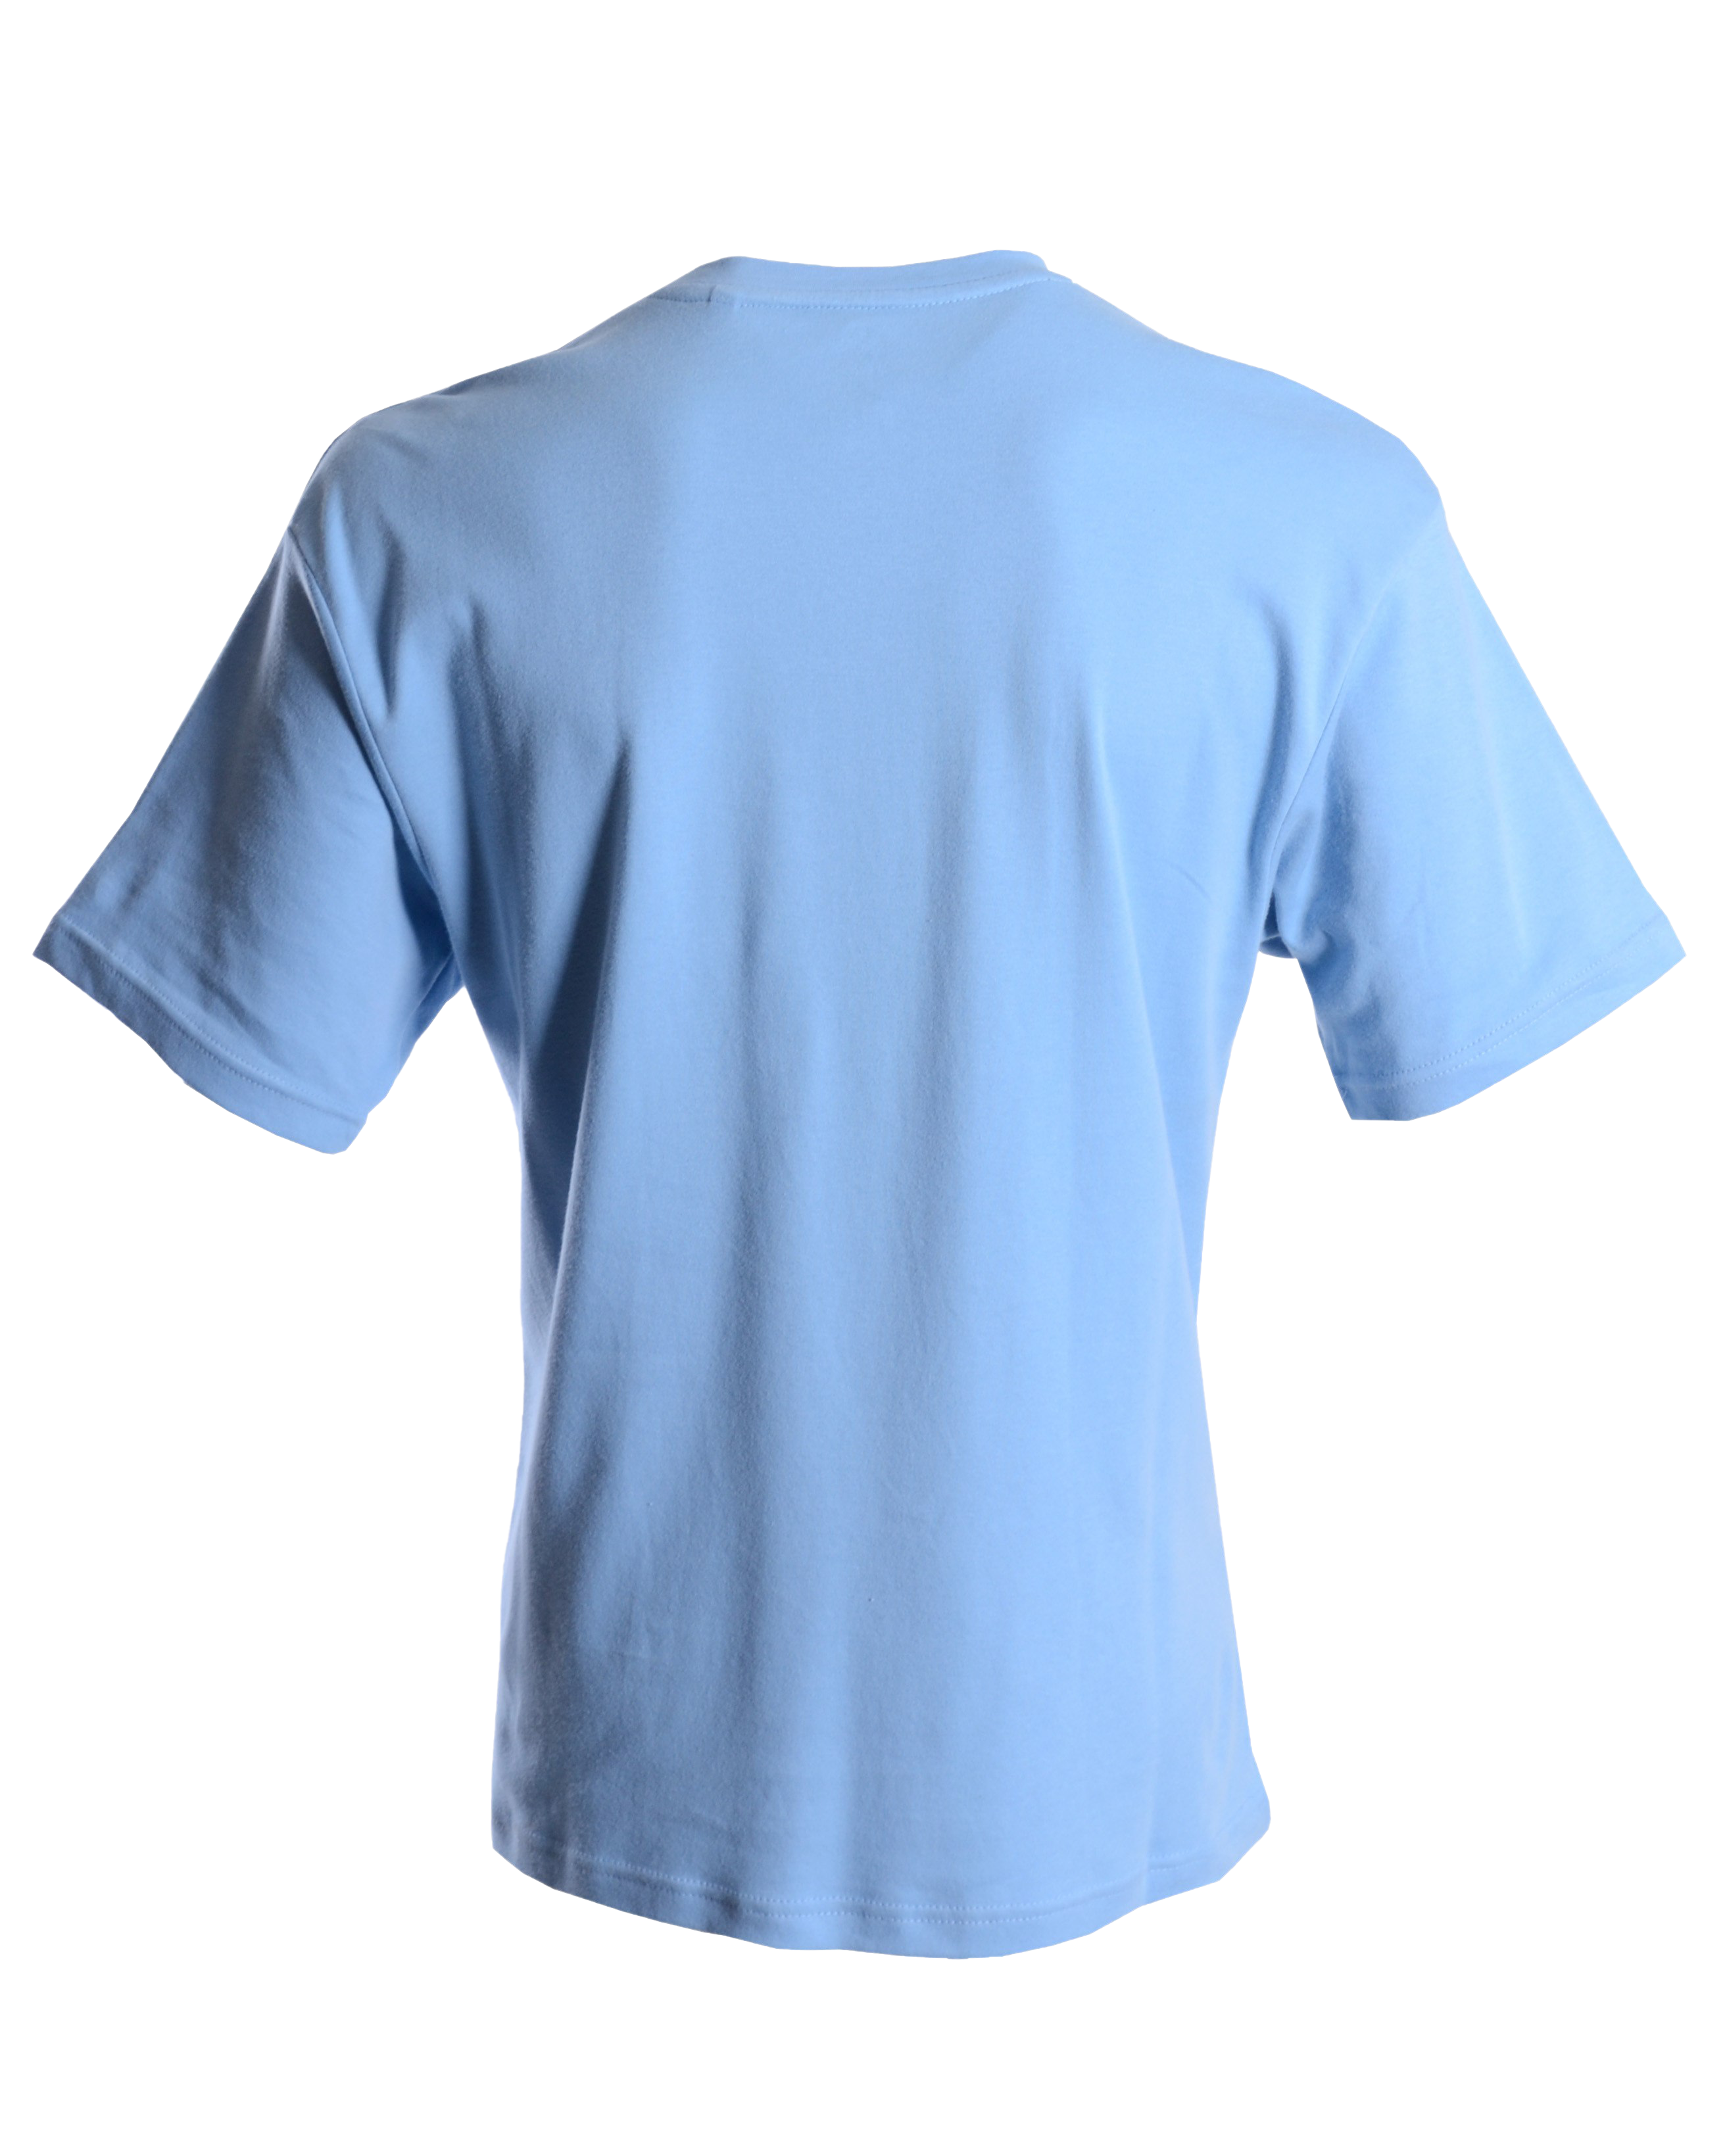 T-shirt biru polos PNG Gambar berkualitas tinggi